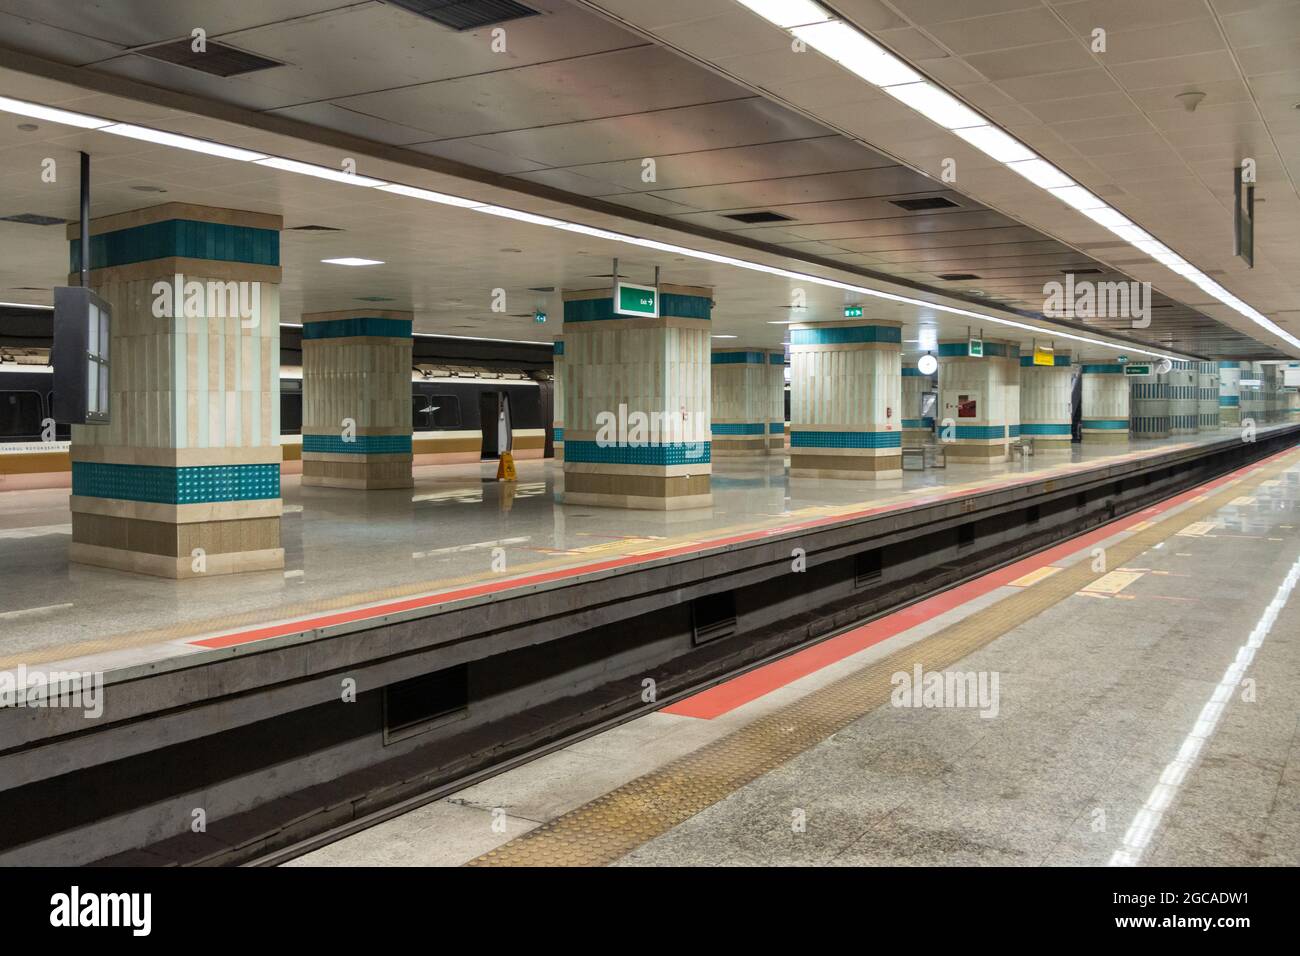 Station de métro vide. Personne Banque D'Images